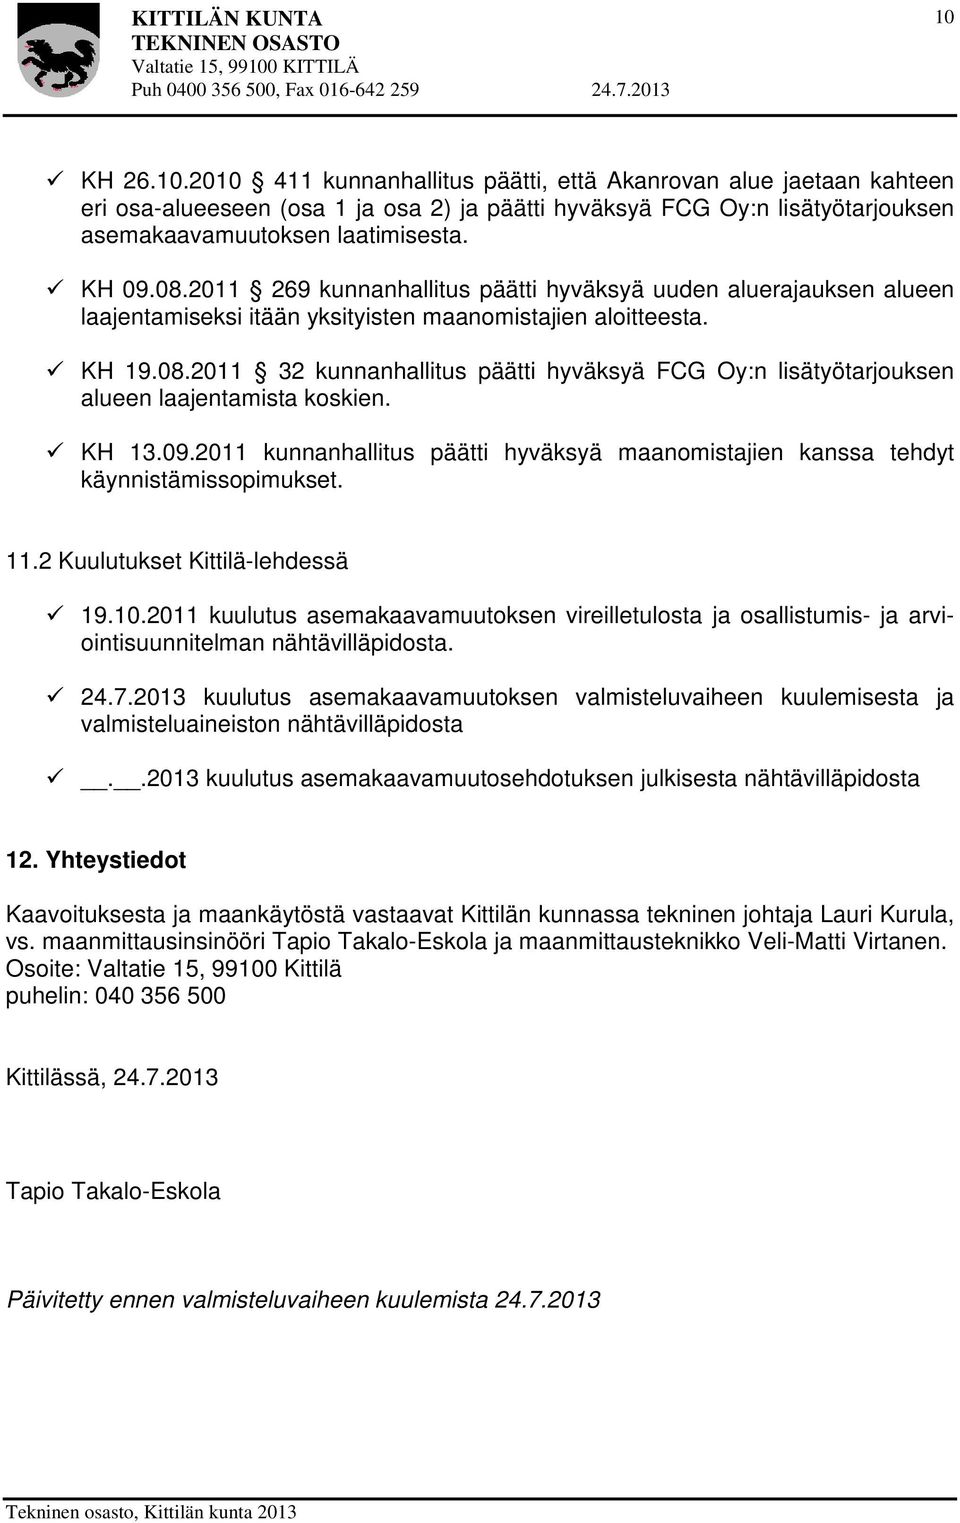 KH 13.09.2011 kunnanhallitus päätti hyväksyä maanomistajien kanssa tehdyt käynnistämissopimukset. 11.2 Kuulutukset Kittilä-lehdessä 19.10.